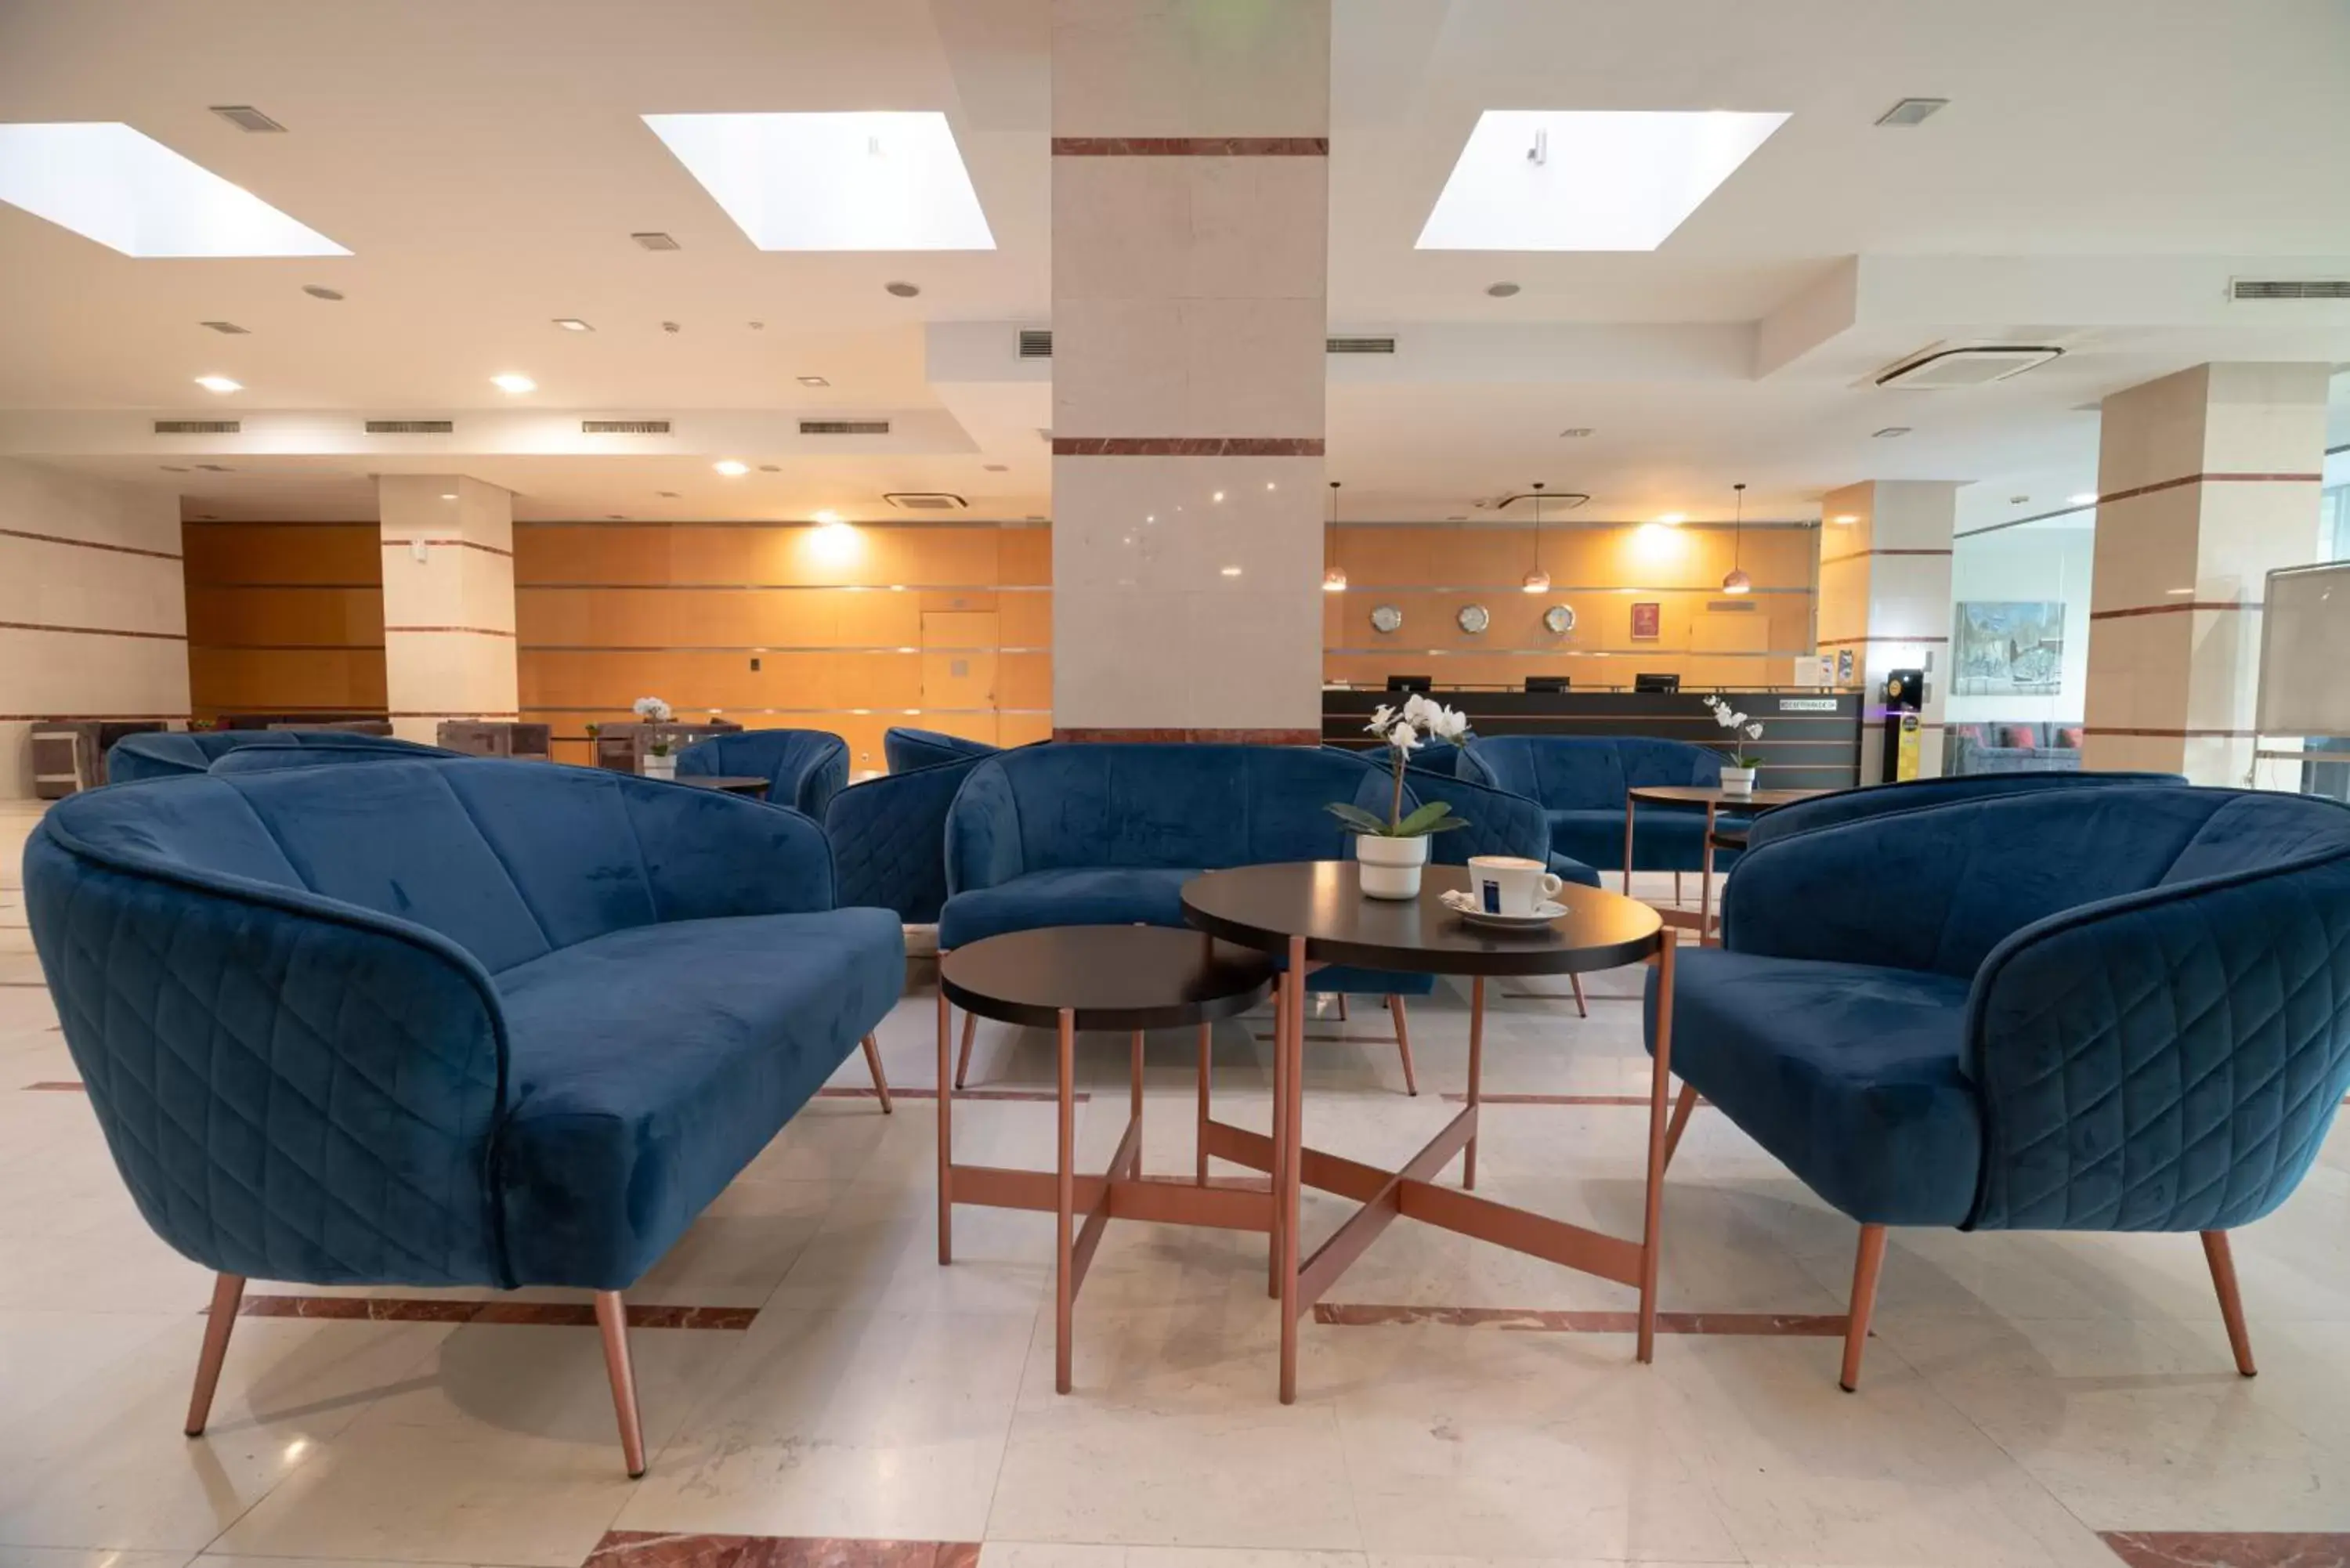 Lobby or reception in Vitosha Park Hotel